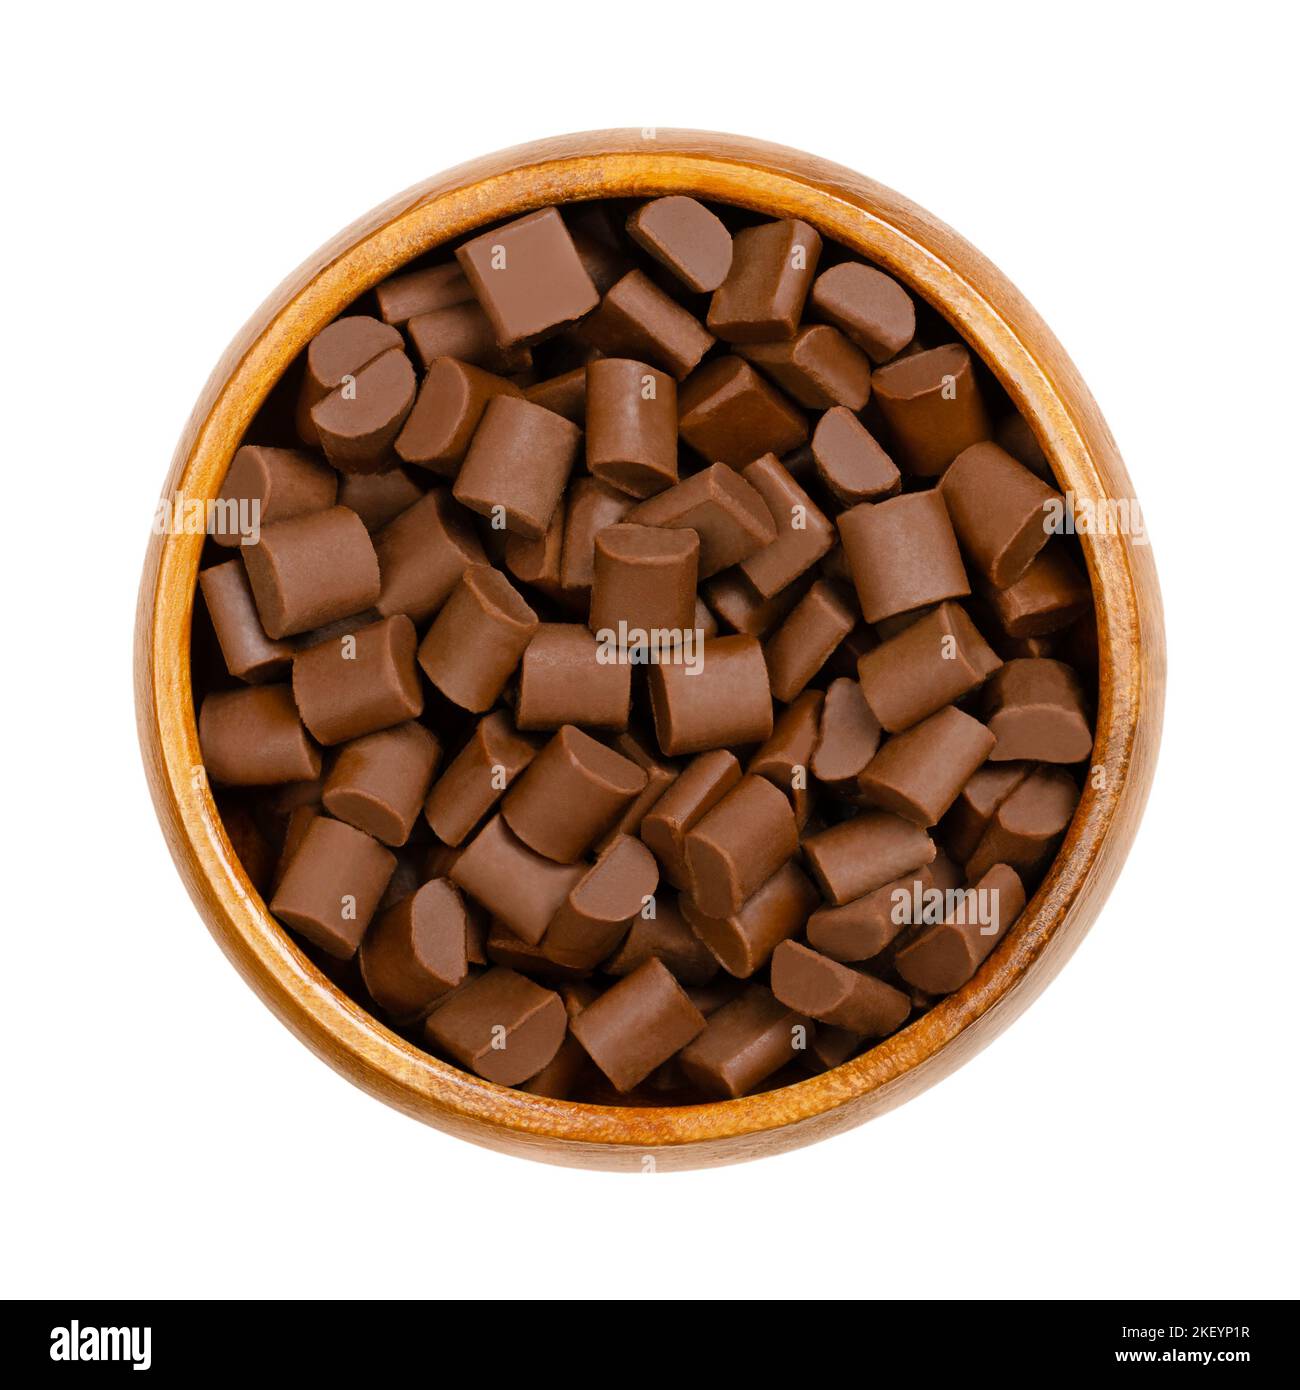 Trozos de chocolate, en un cuenco de madera. Patatas fritas y pequeños bocados de chocolate con leche, utilizados como ingrediente en una serie de postres dulces. Foto de stock